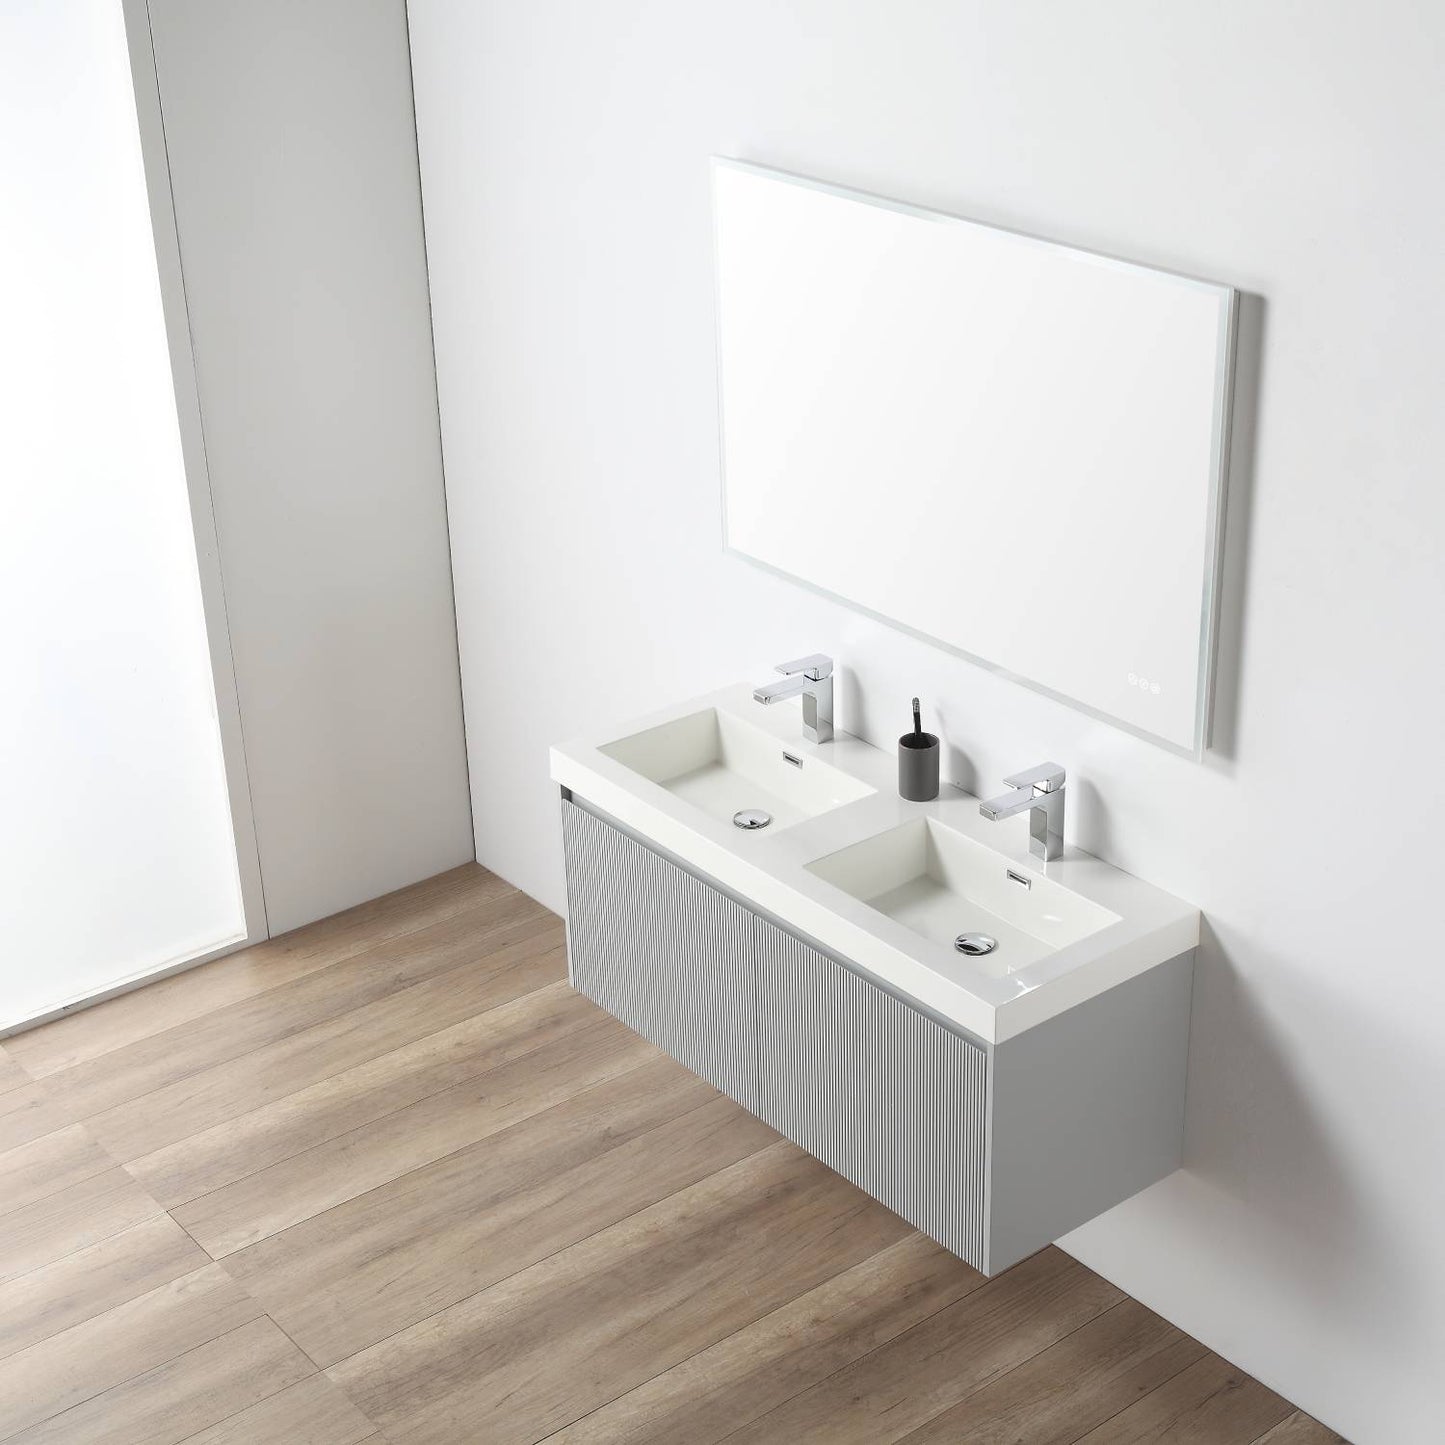 Positano 48" Floating Bathroom Vanity with Double Acrylic Sinks - Light Grey